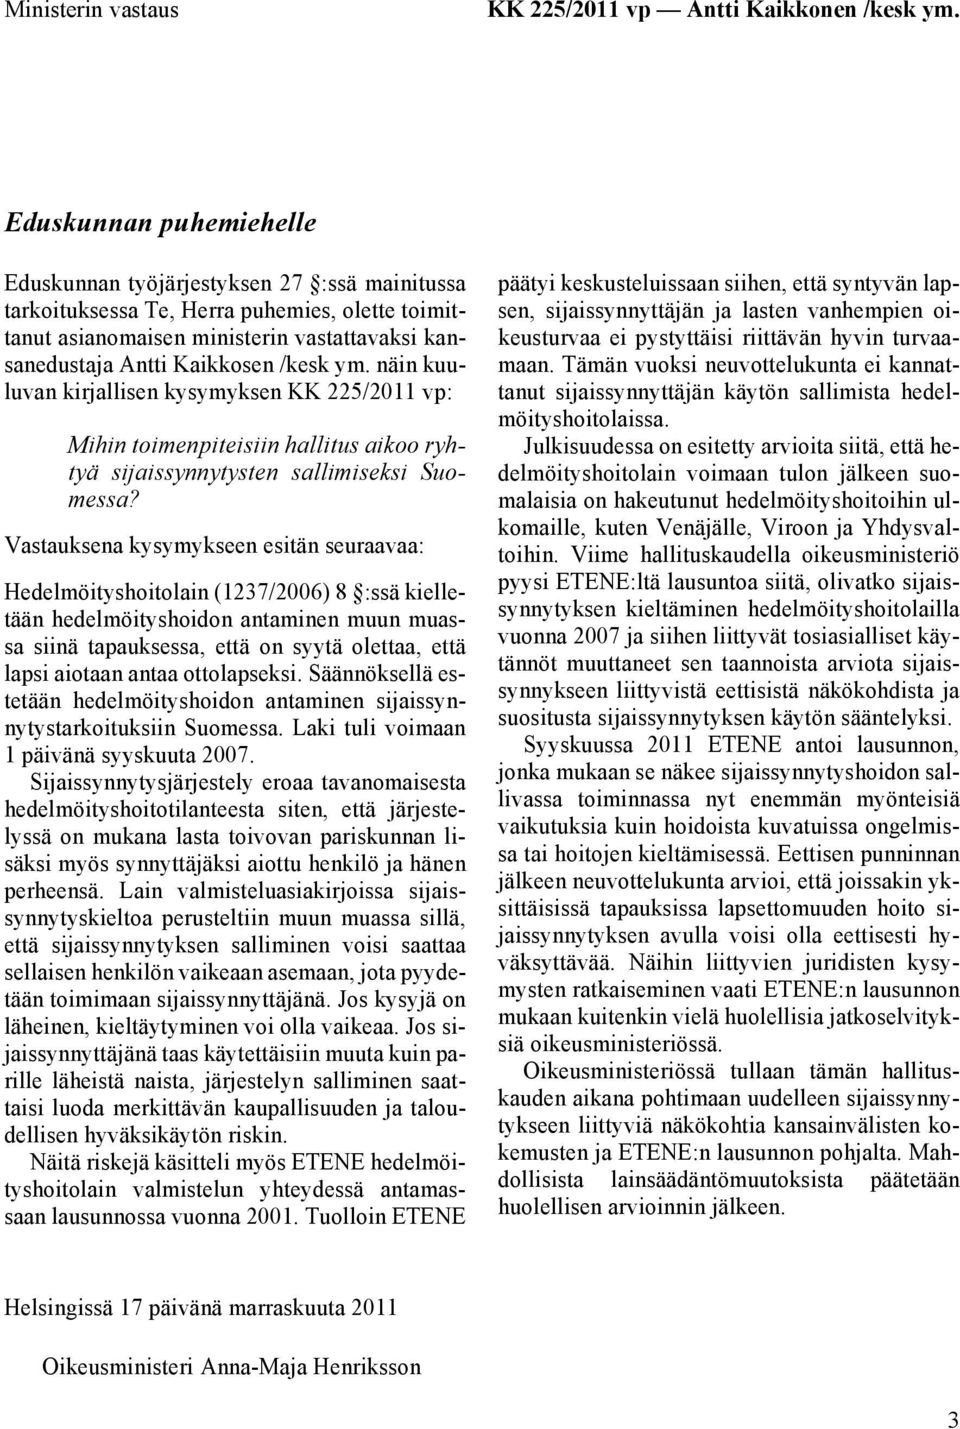 ym. näin kuuluvan kirjallisen kysymyksen KK 225/2011 vp: Mihin toimenpiteisiin hallitus aikoo ryhtyä sijaissynnytysten sallimiseksi Suomessa?